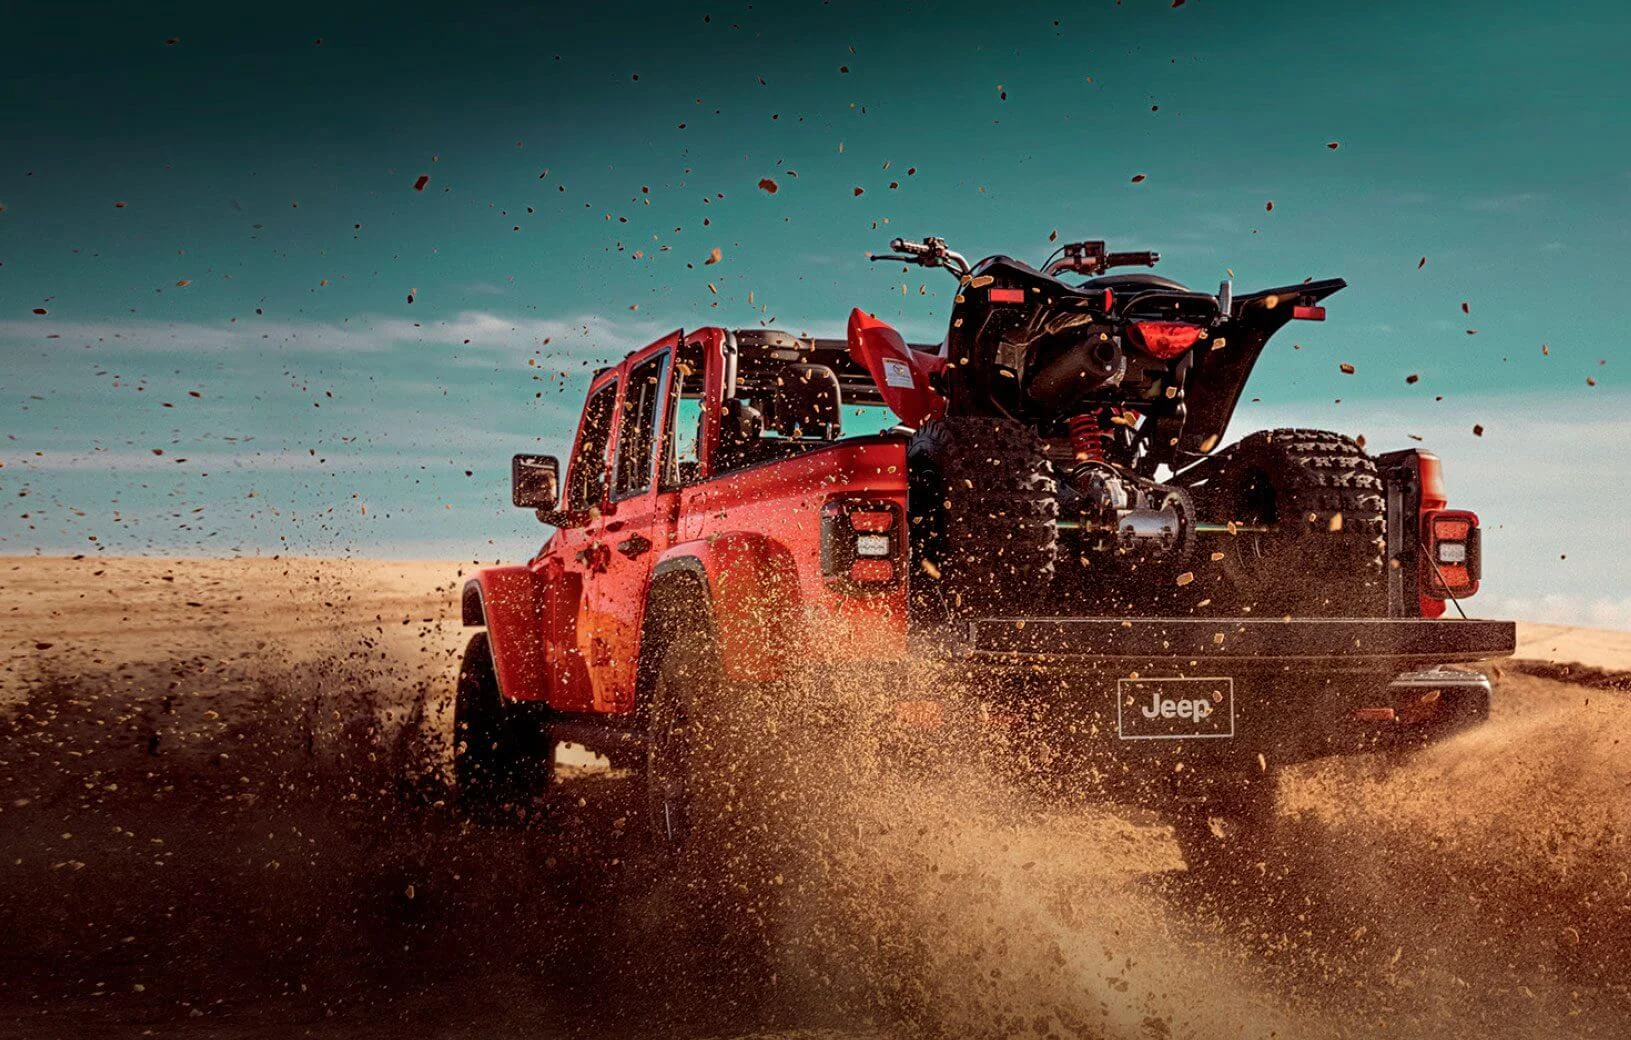 Picape Jeep Gladiator vermelha vista de trás, com quadriciclo na caçamba aberta, em terreno arenoso.